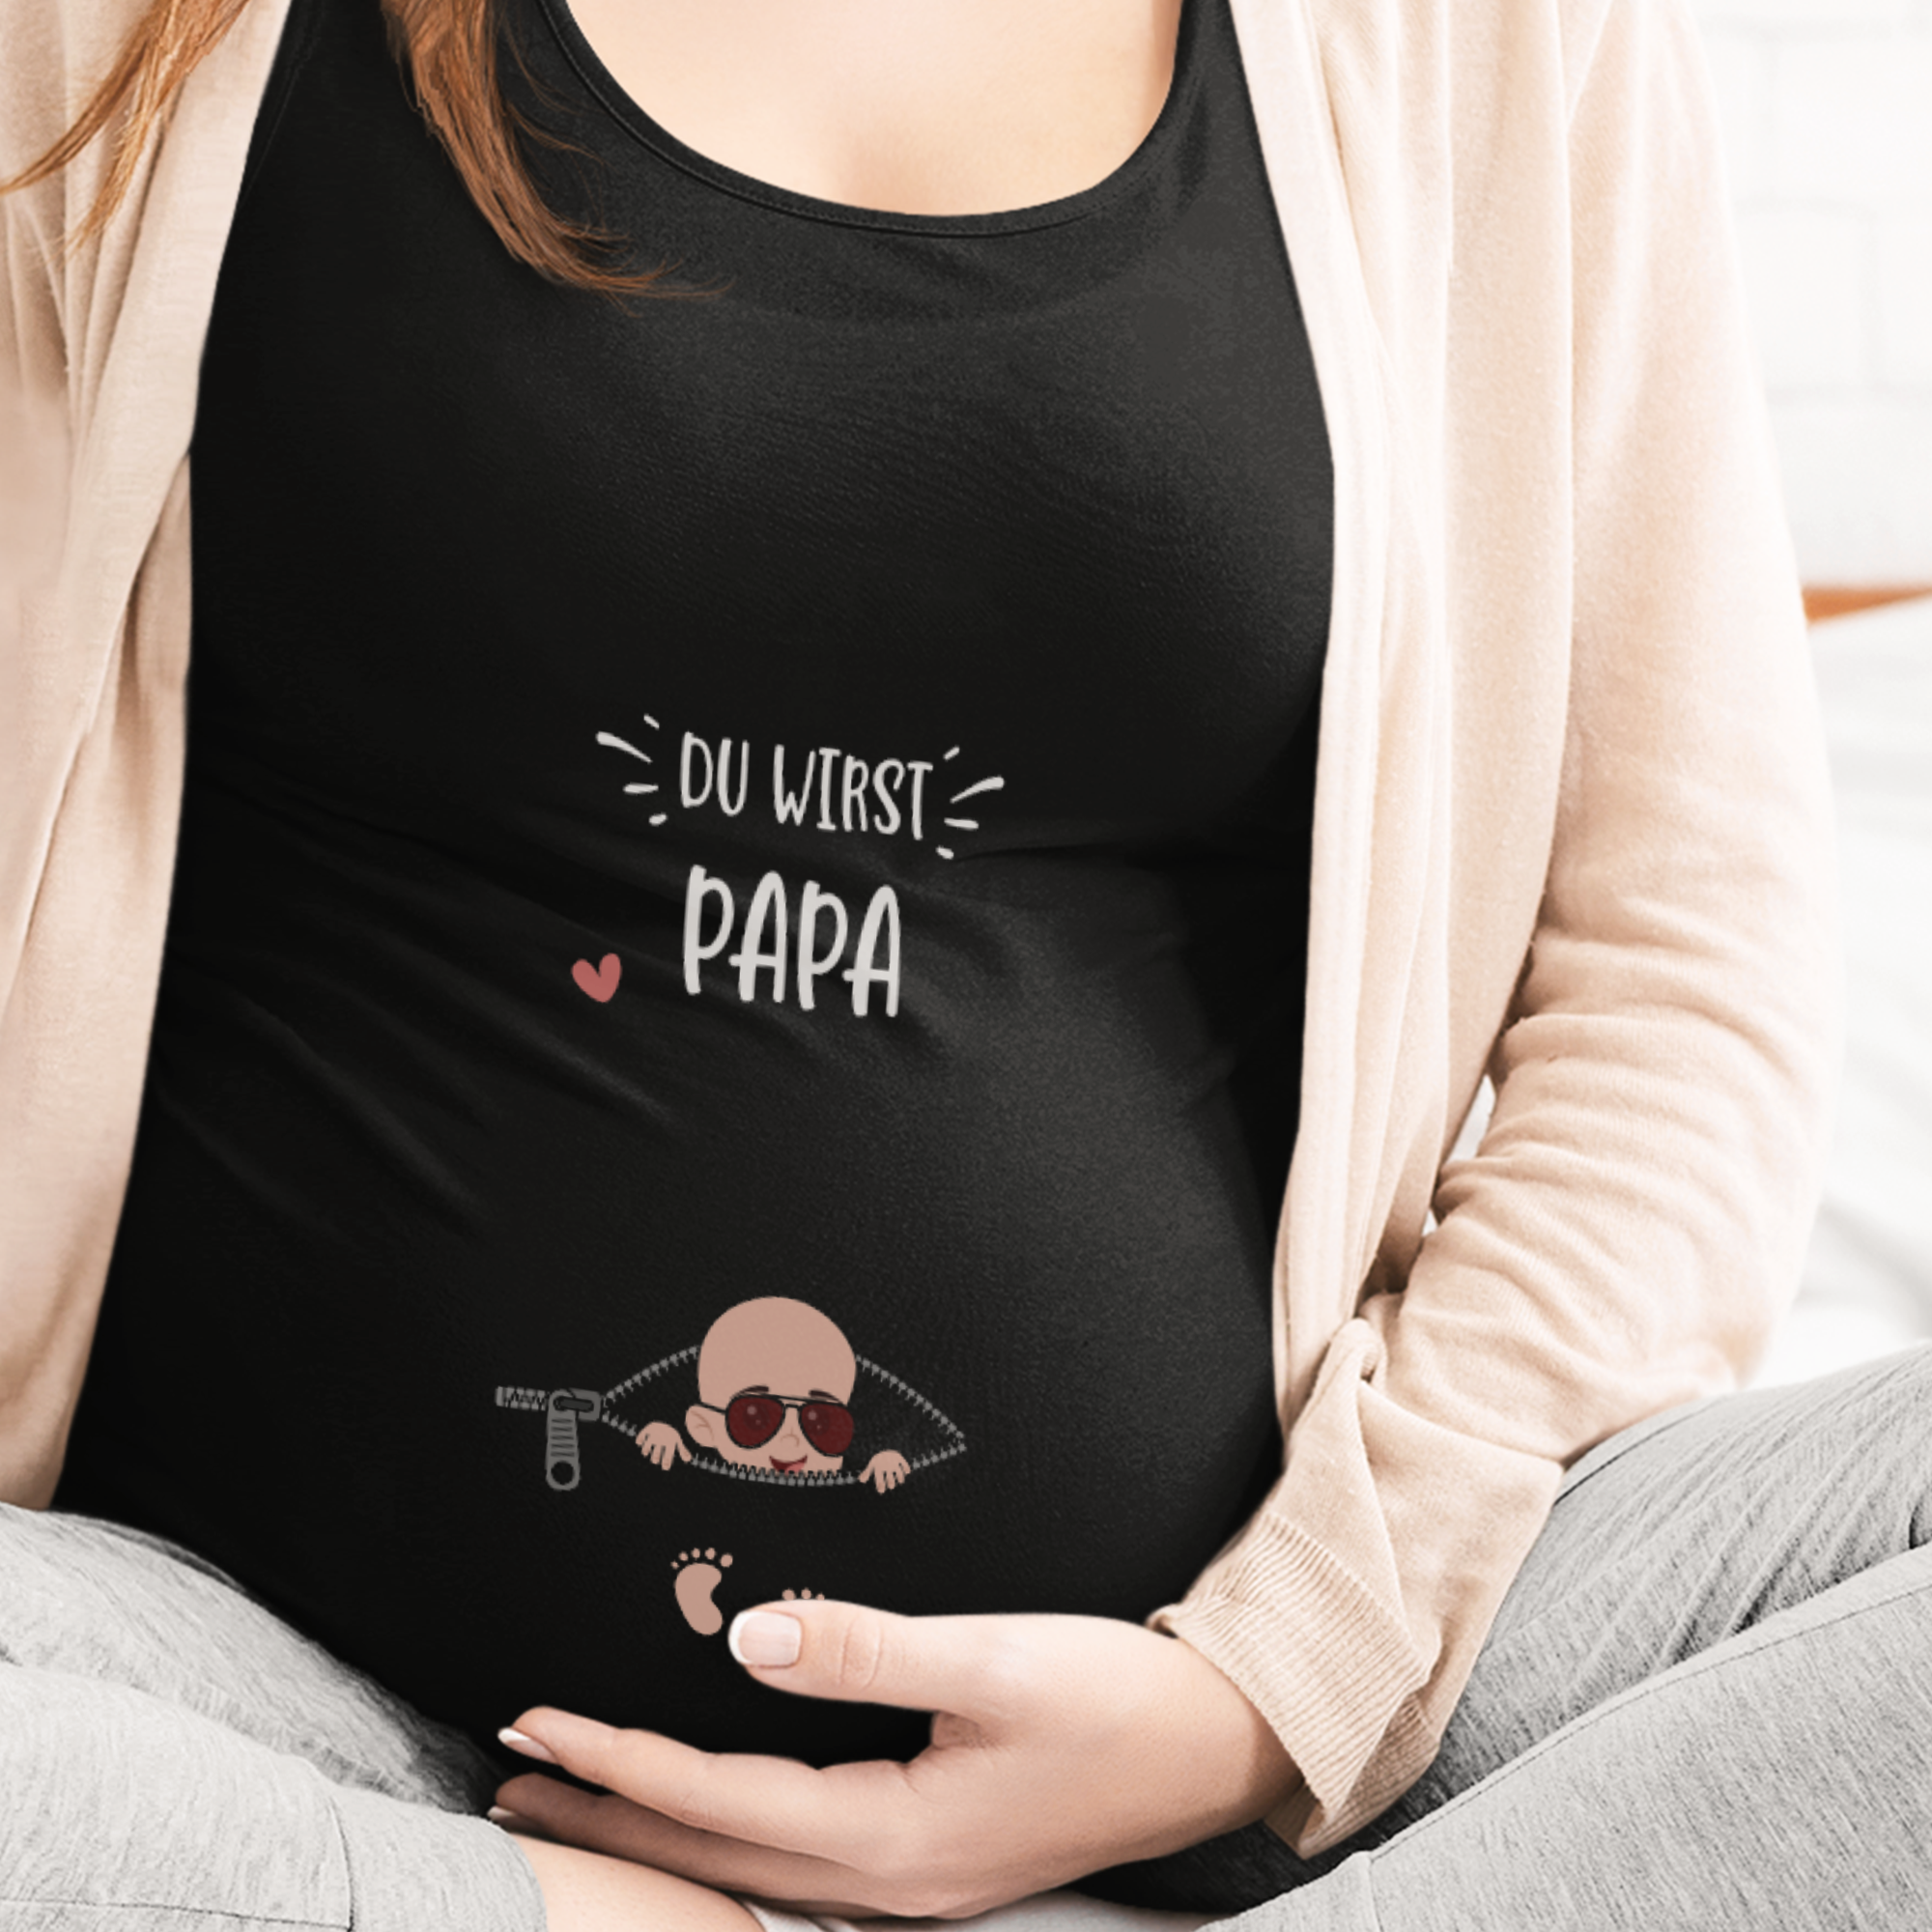 Du Wirst Papa Schwangerschafts T-Shirt - DESIGNSBYJNK5.COM